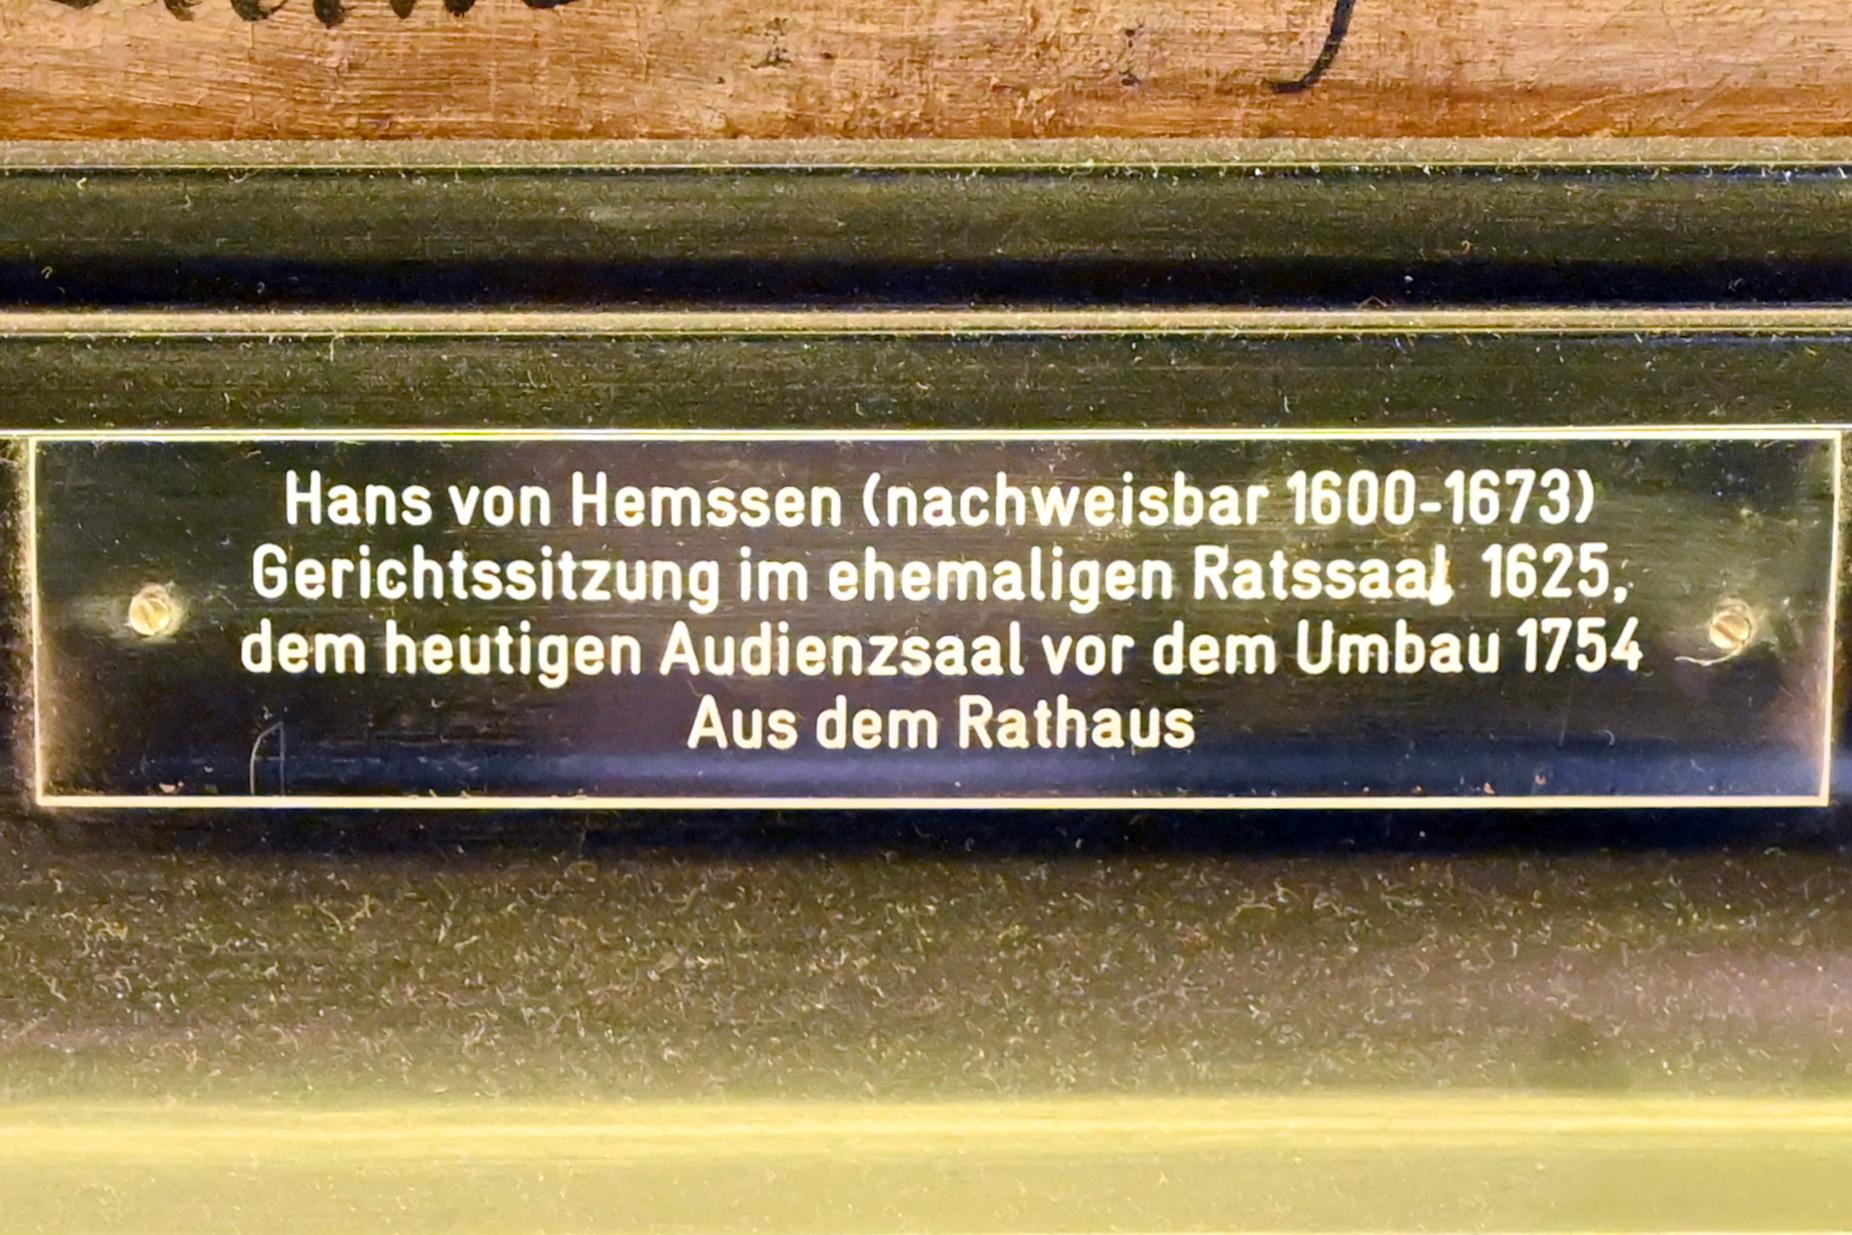 Hans von Hembsen (Hemssen) (1625), Gerichtssitzung im ehemaligen Ratssaal, Lübeck, Lübecker Rathaus, jetzt Lübeck, St. Annen-Museum, Obergeschoß, Saal 1, 1625, Bild 2/2